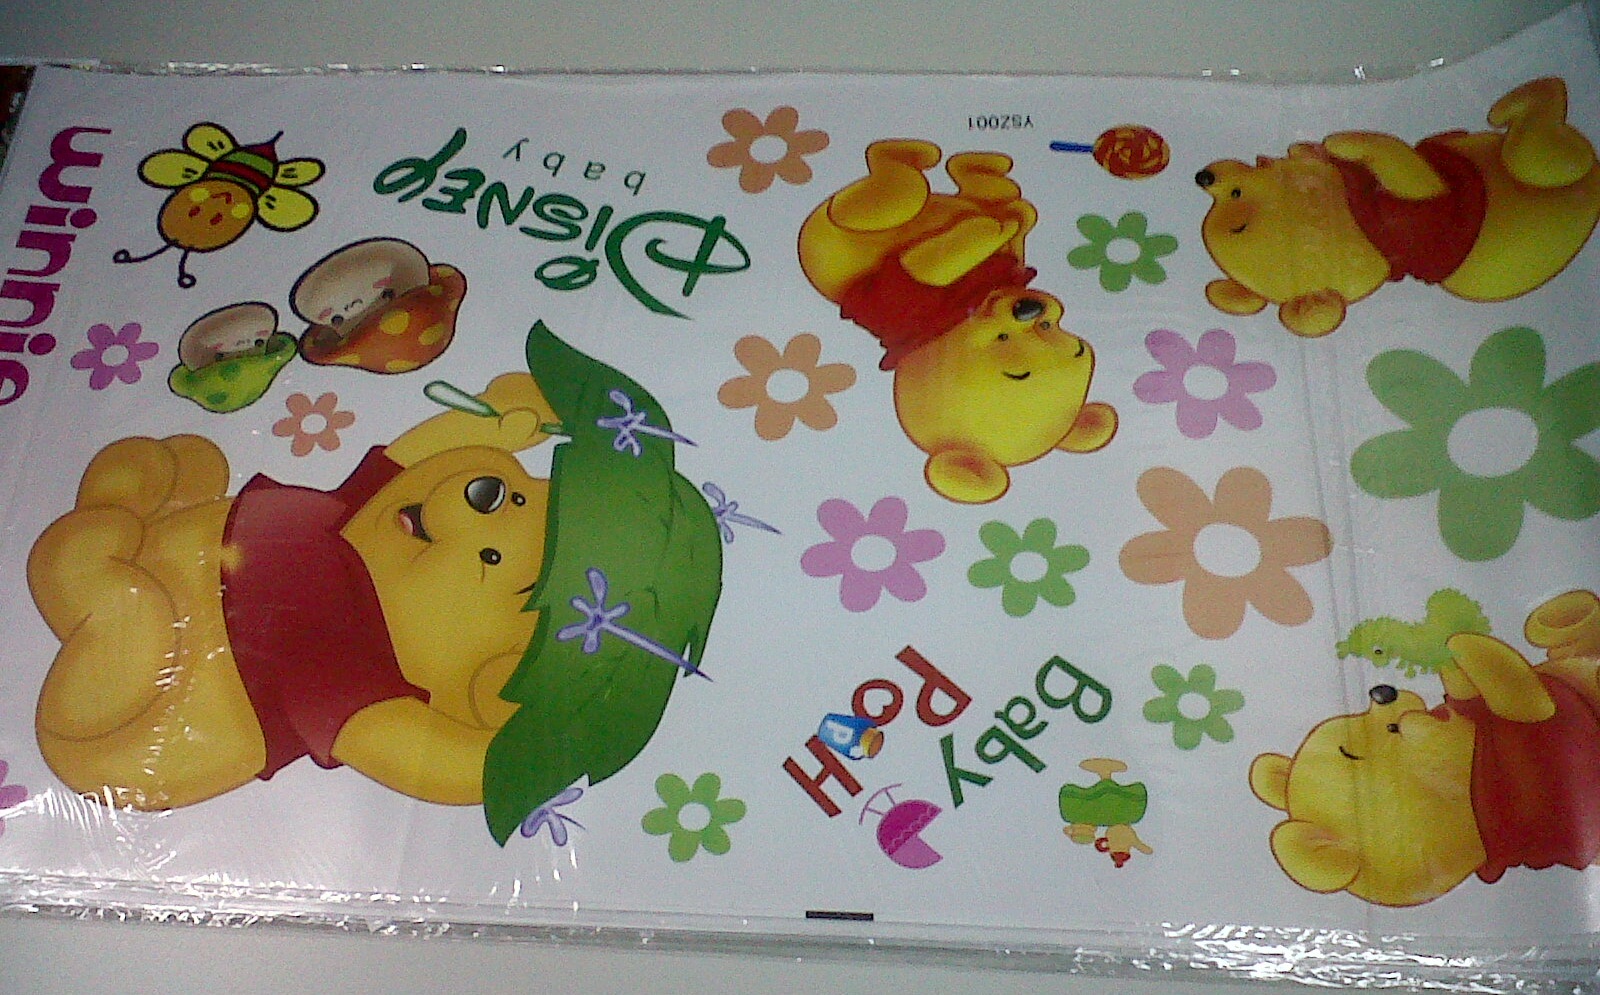 Wall Sticker  Stiker Dinding Winnie The Pooh YSZ 001  Alhamdulill   ah 